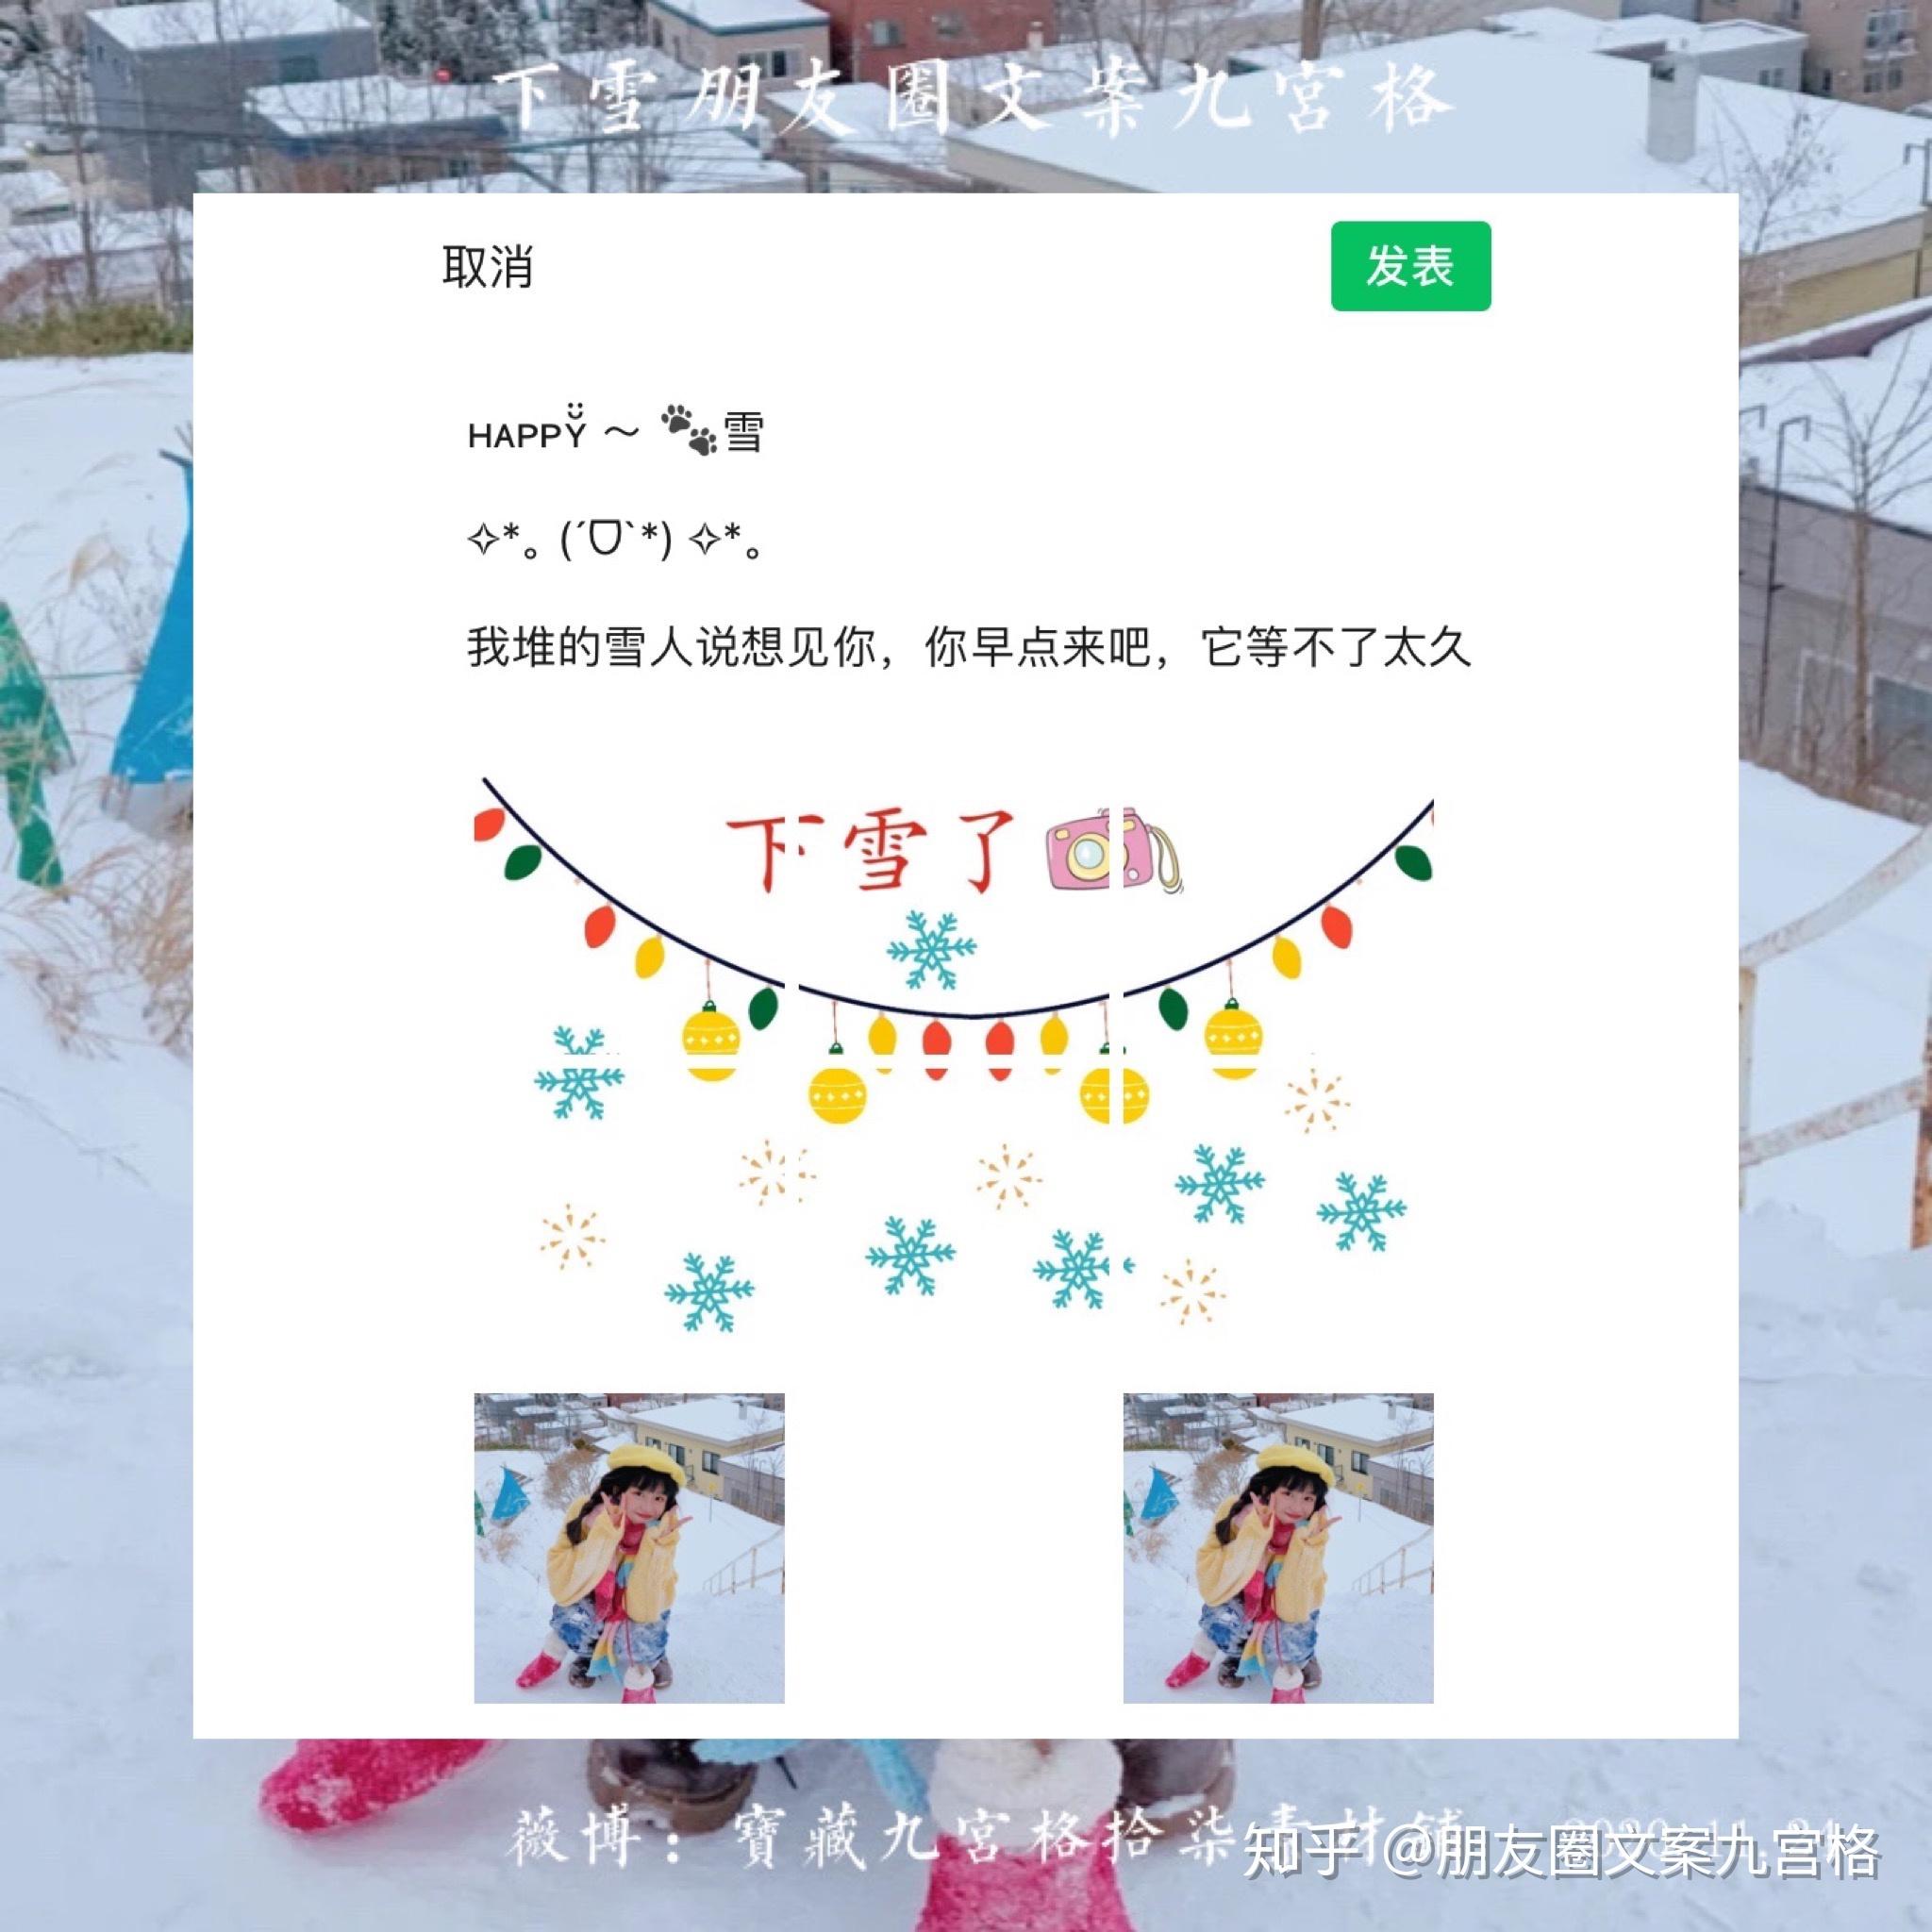 北京下雪#适合下雪发朋友圈的文案#下雪啦#九宫格#朋友圈分割线